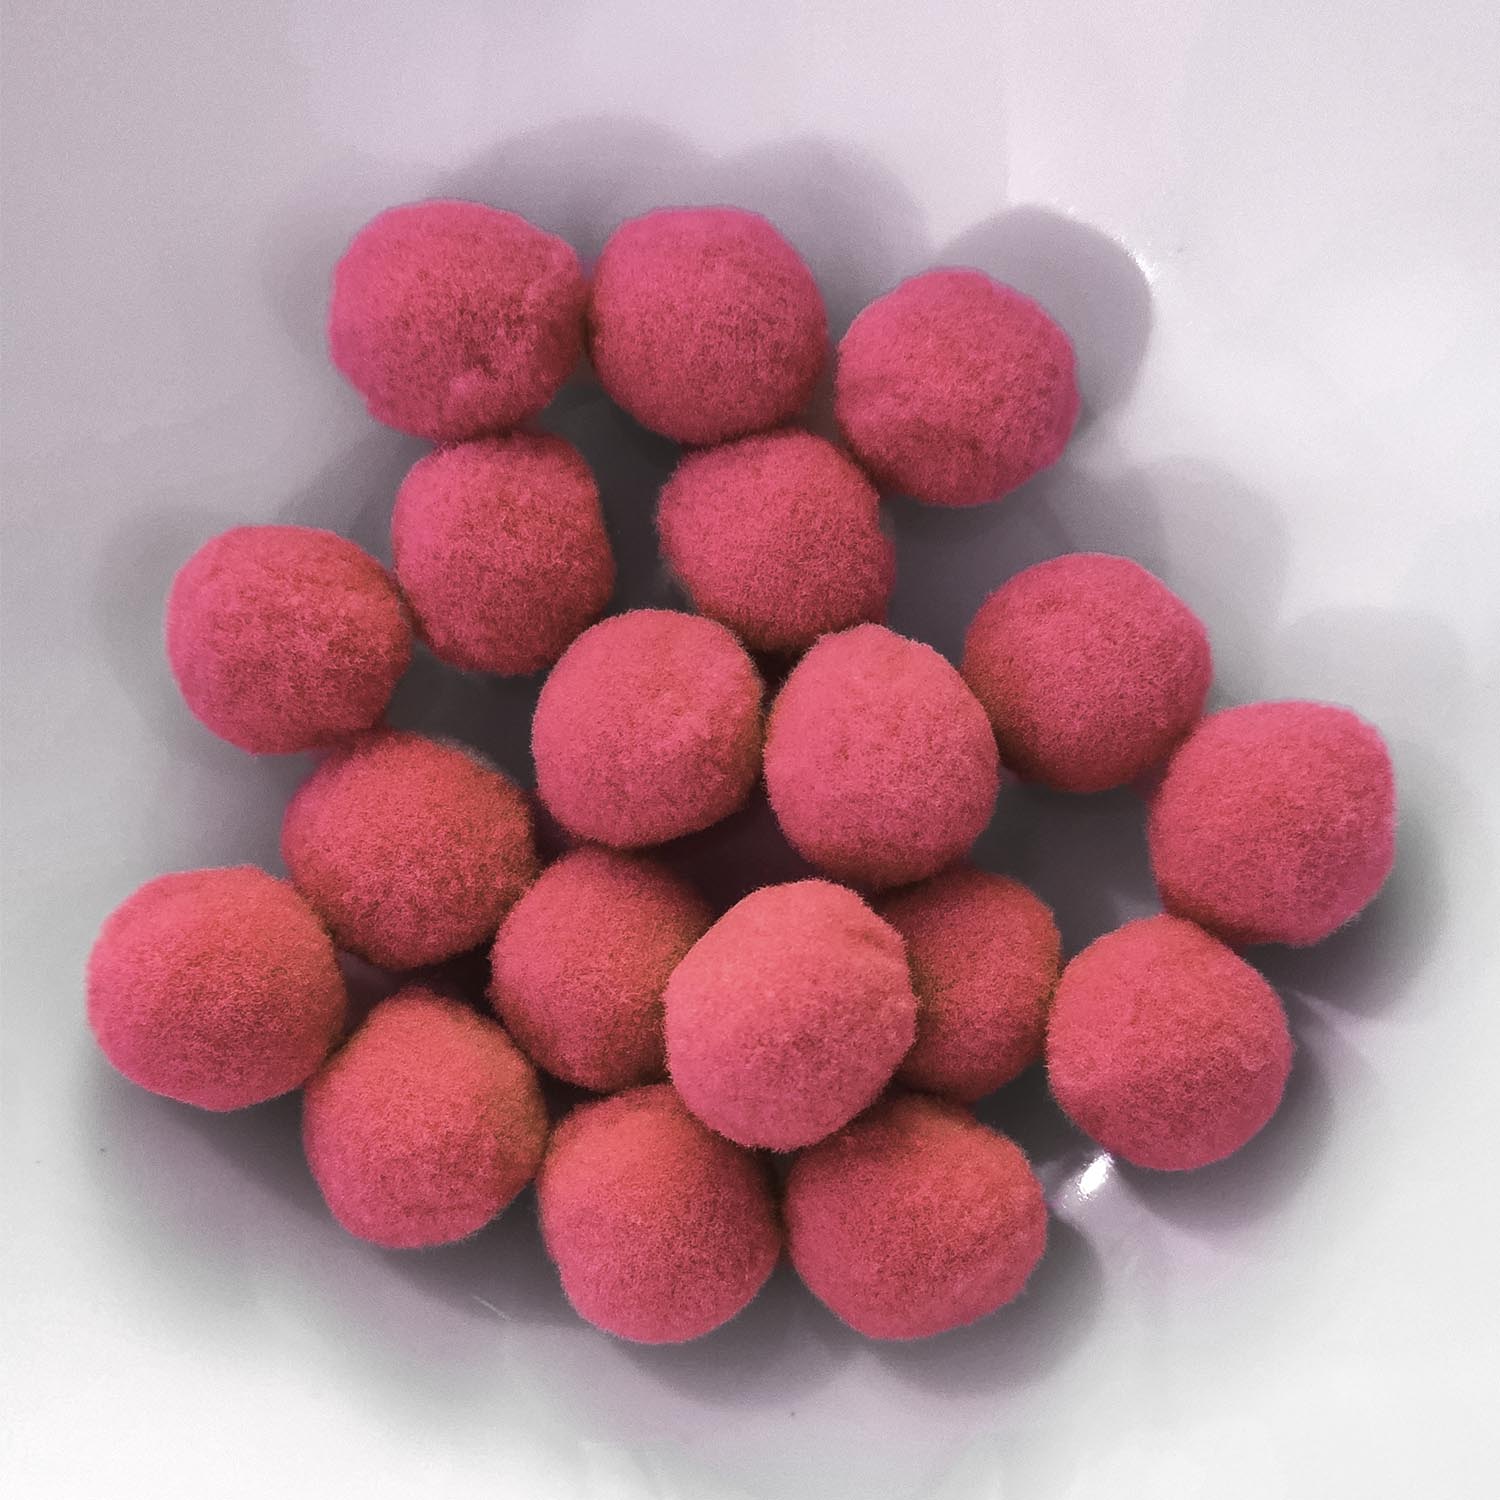 PomPon / Bälle aus Baumwolle - 10 mm / 50er Set - Rosa dunkel